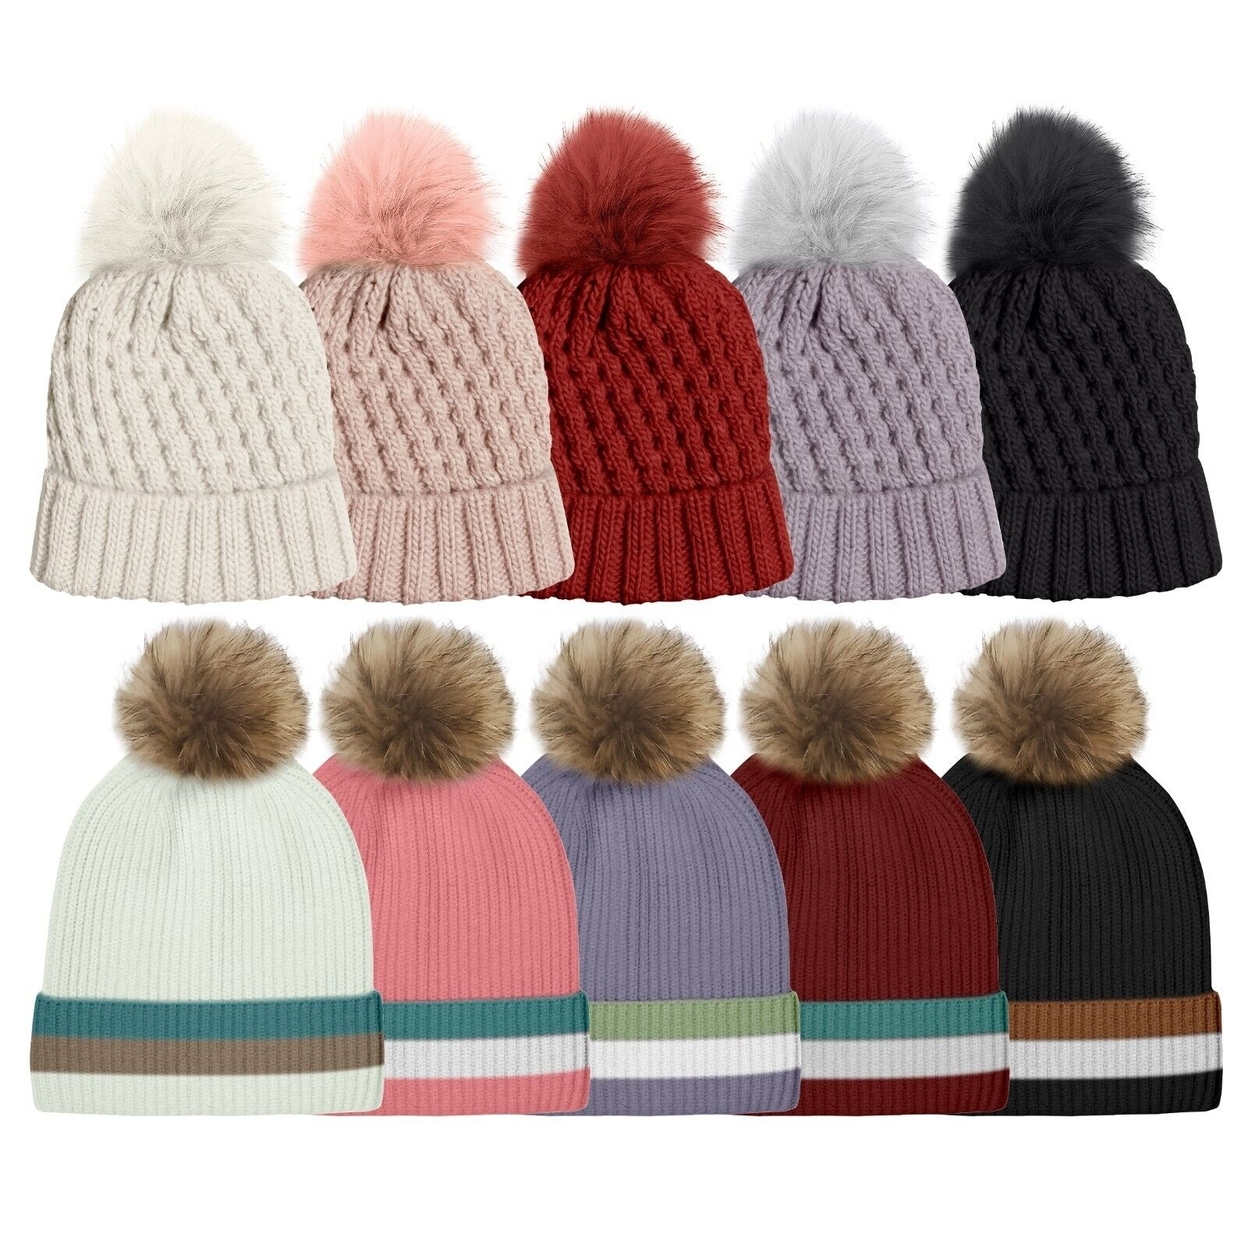 2-Pack: Women's Ultra-Soft Winter Warm Knit Feel Pom Pom Hat W/ Faux Fur Lining - Striped